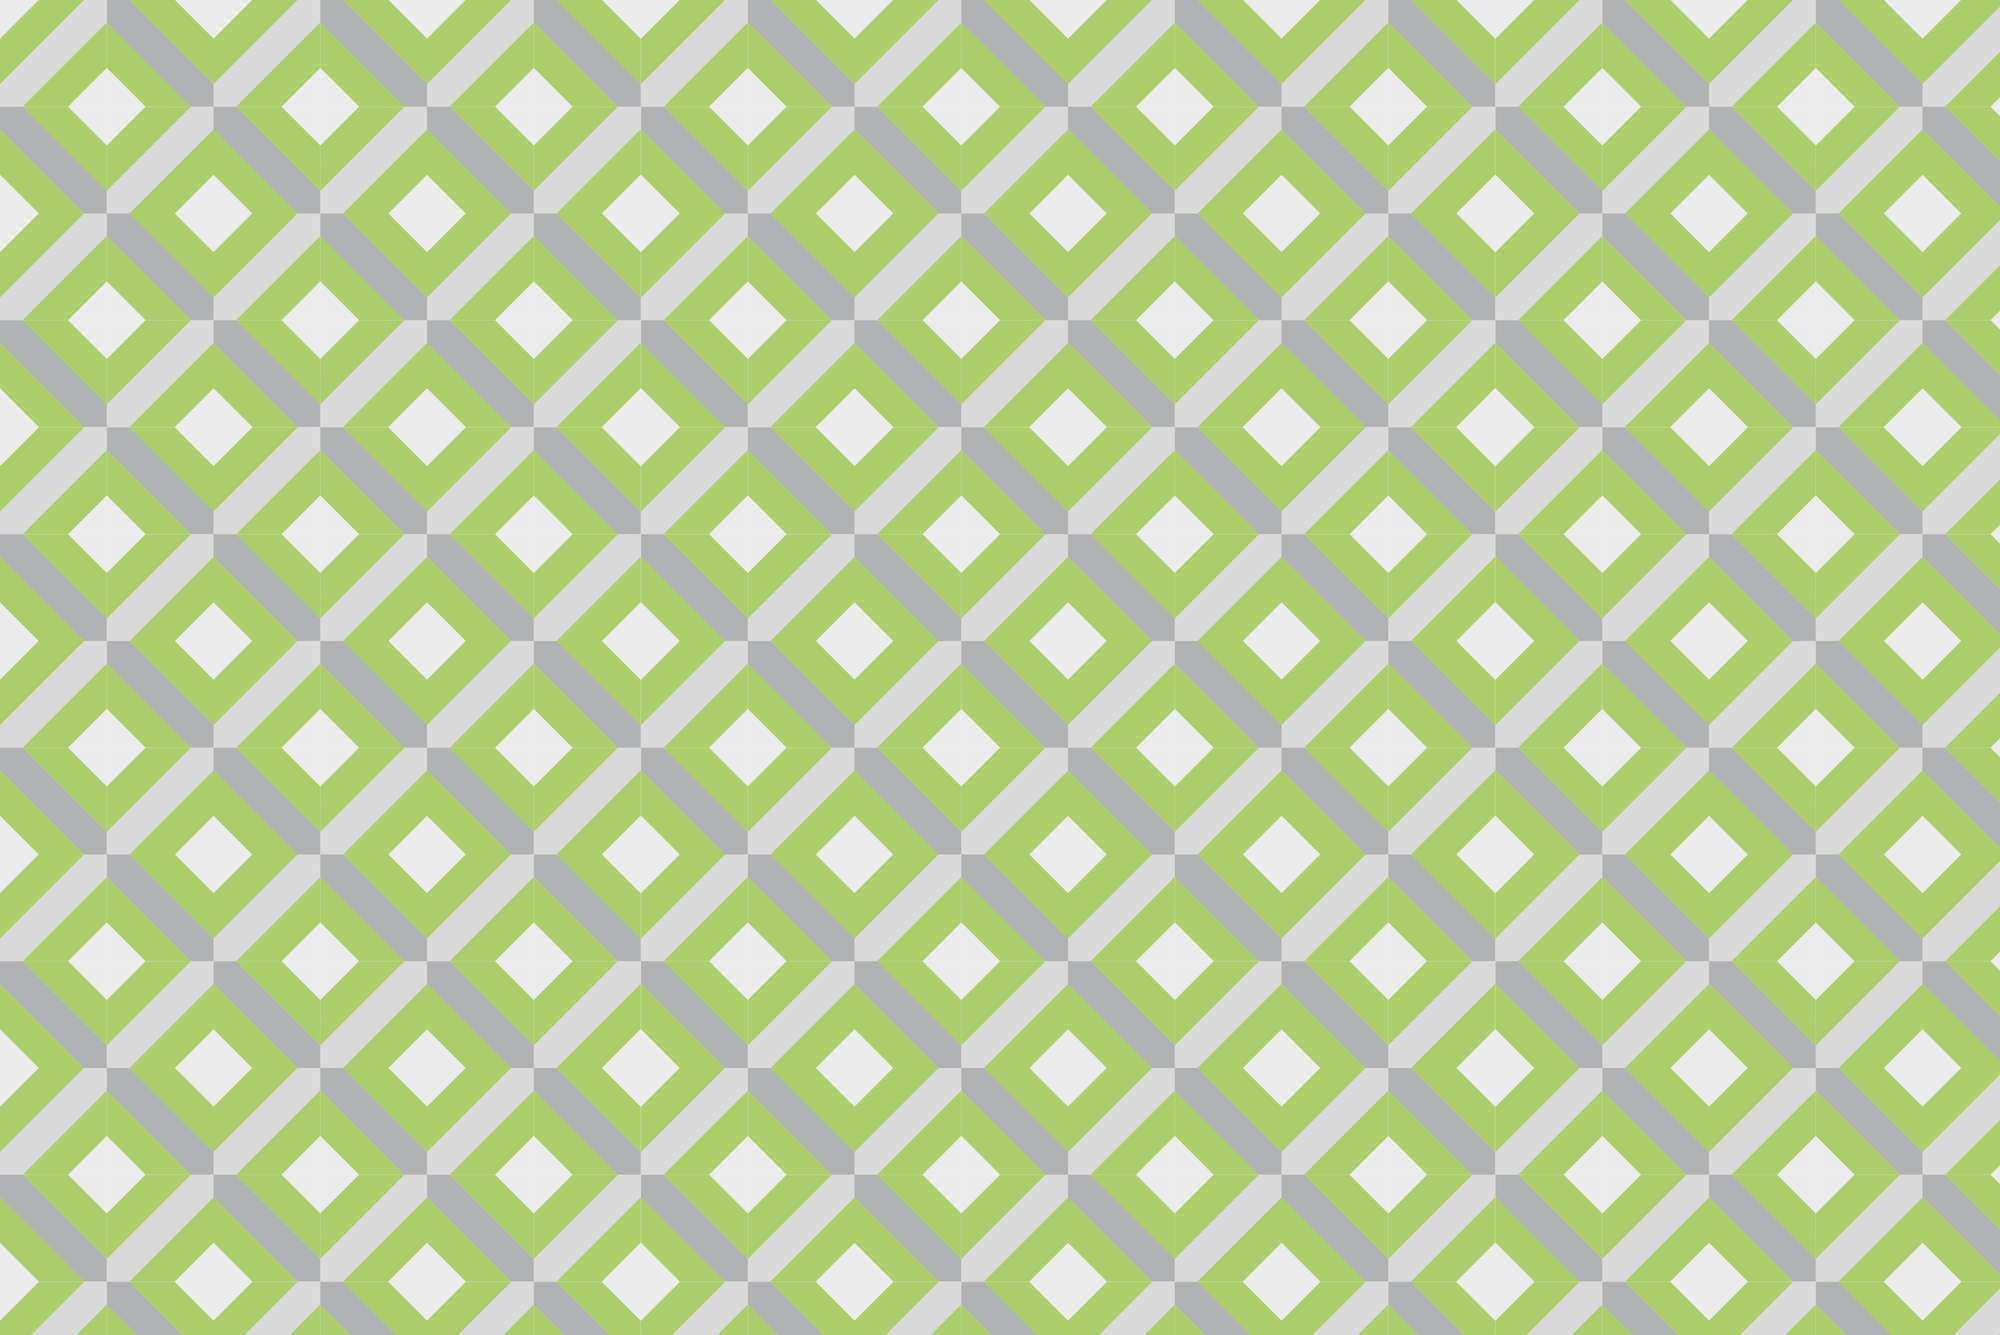             Papier peint design motif boîte avec petits carrés vert sur intissé lisse mat
        